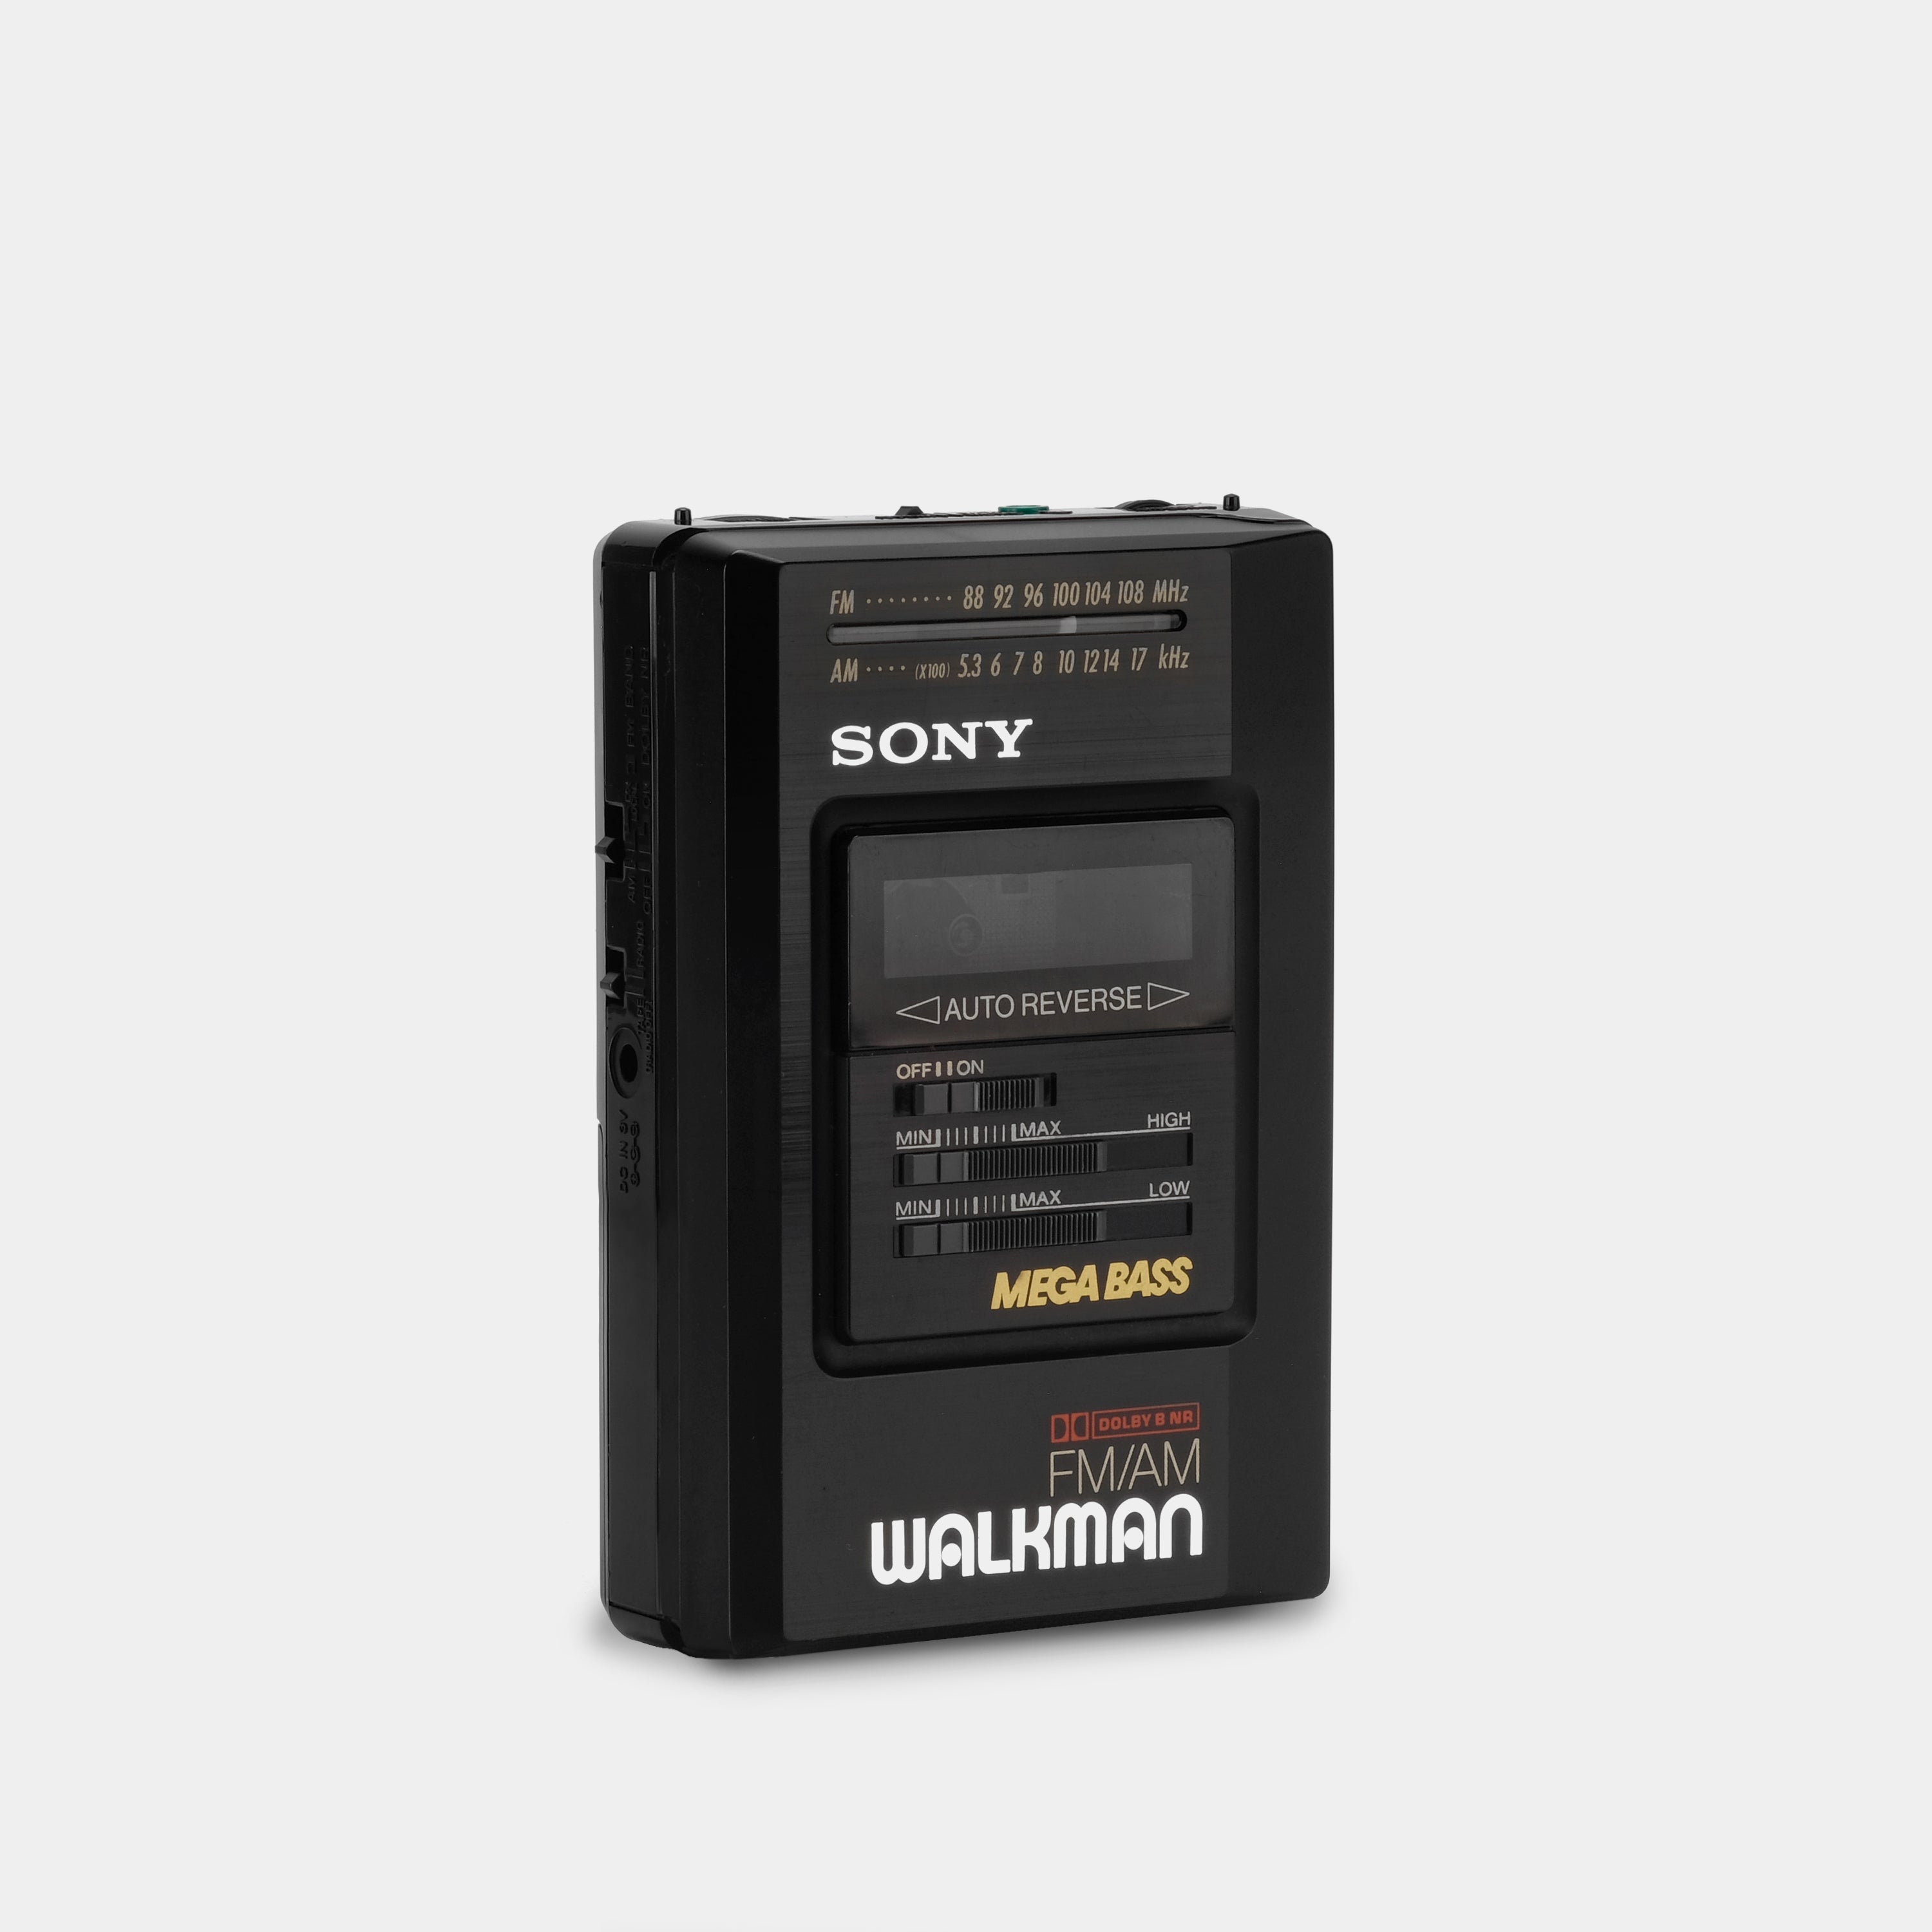 Sony Walkman WM-AF57/BF57 MEGA BASS AM/FM Radio Cassette Player